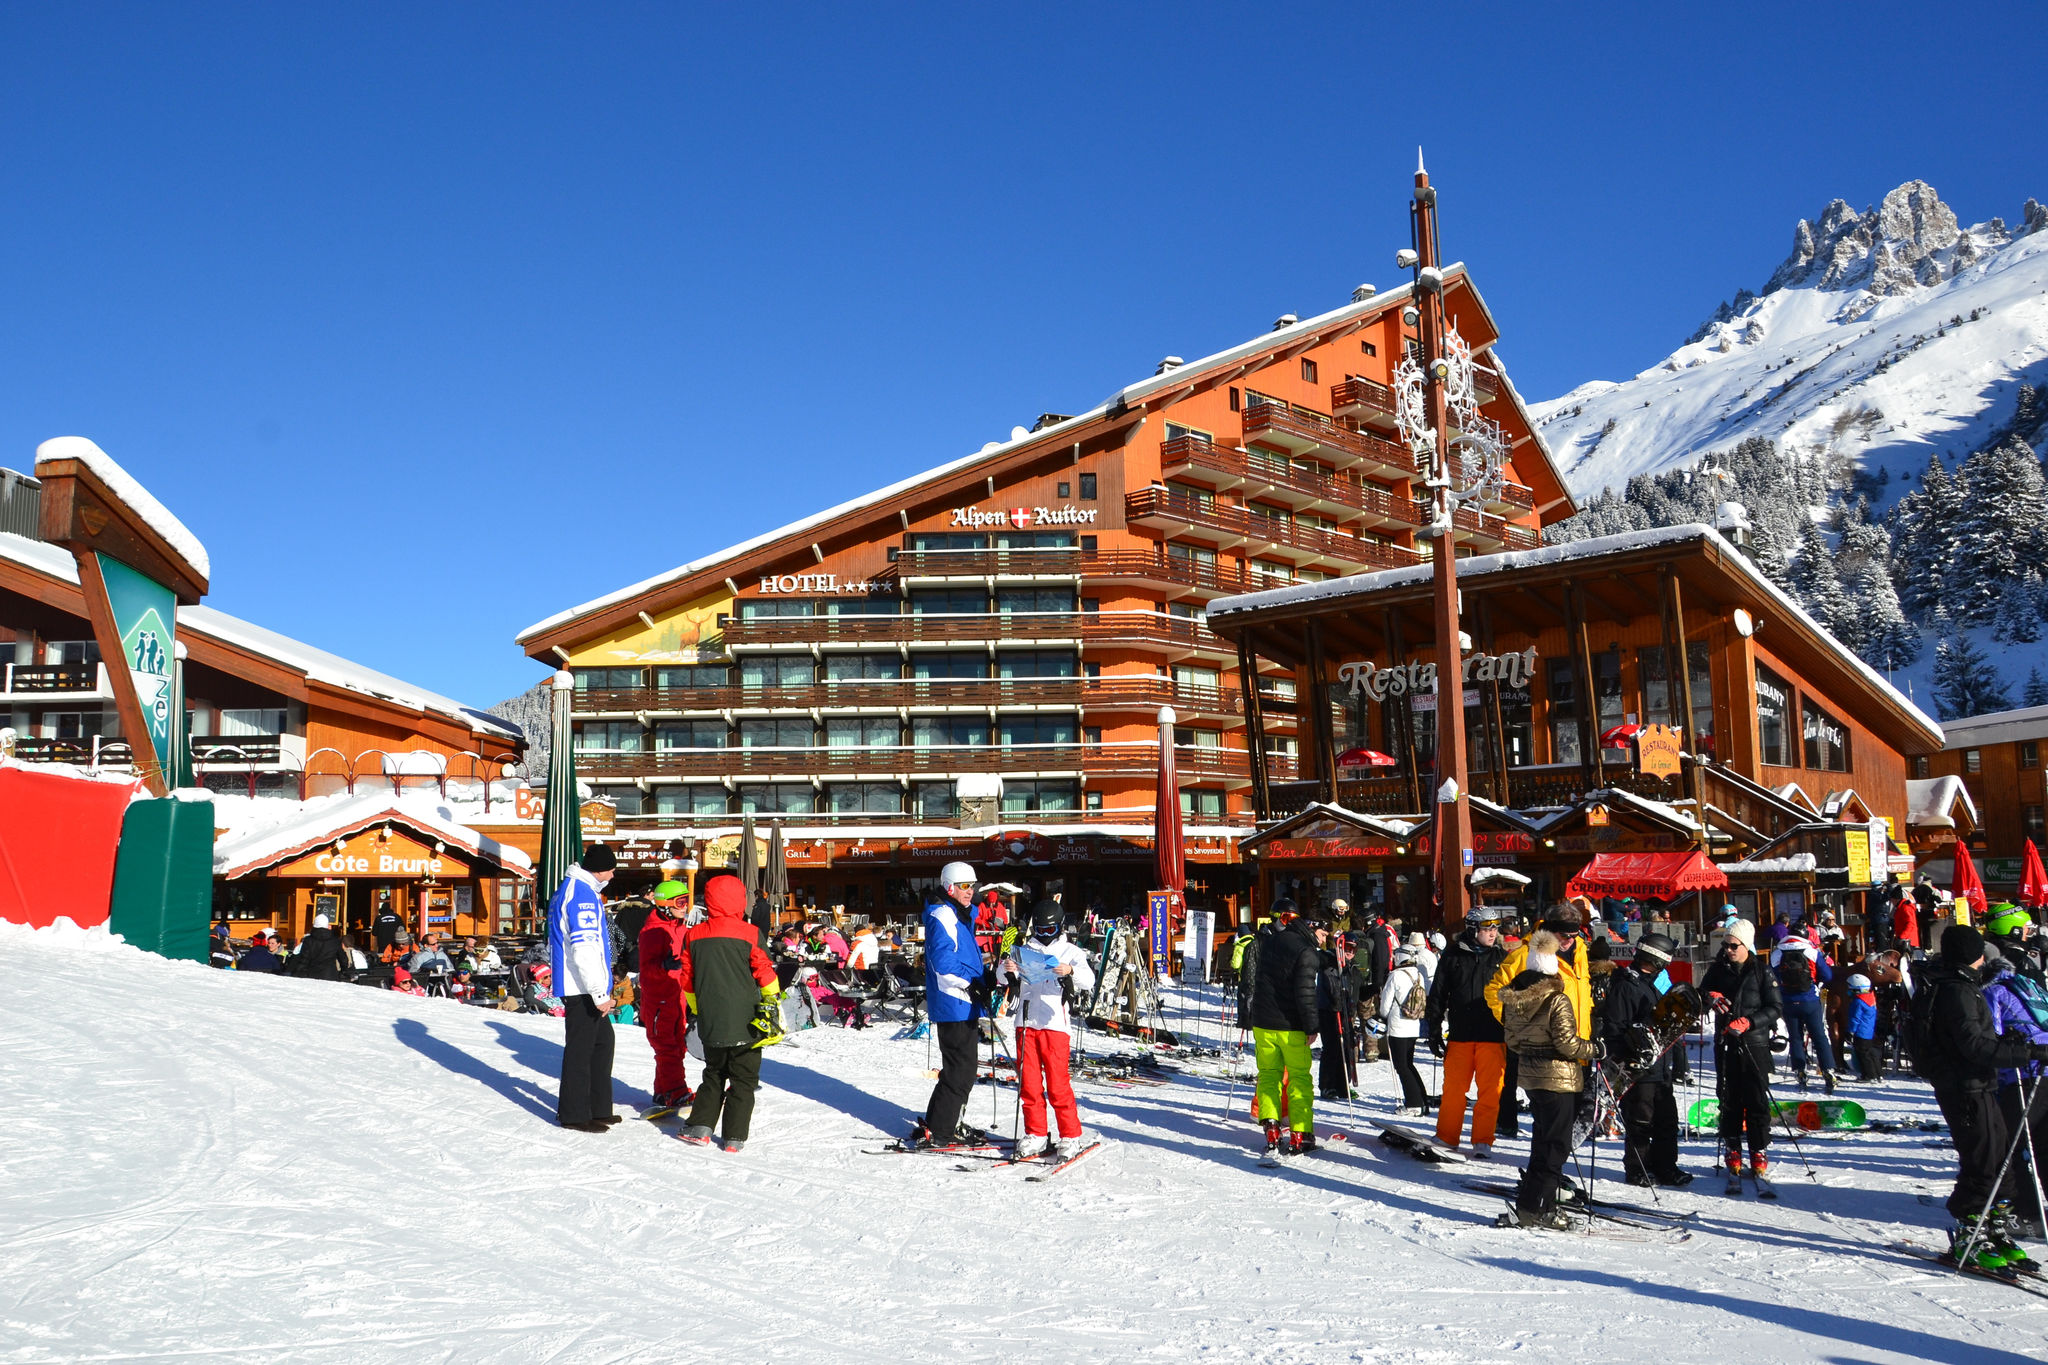 Wintervakantieappartement in Méribel dicht bij skiliften